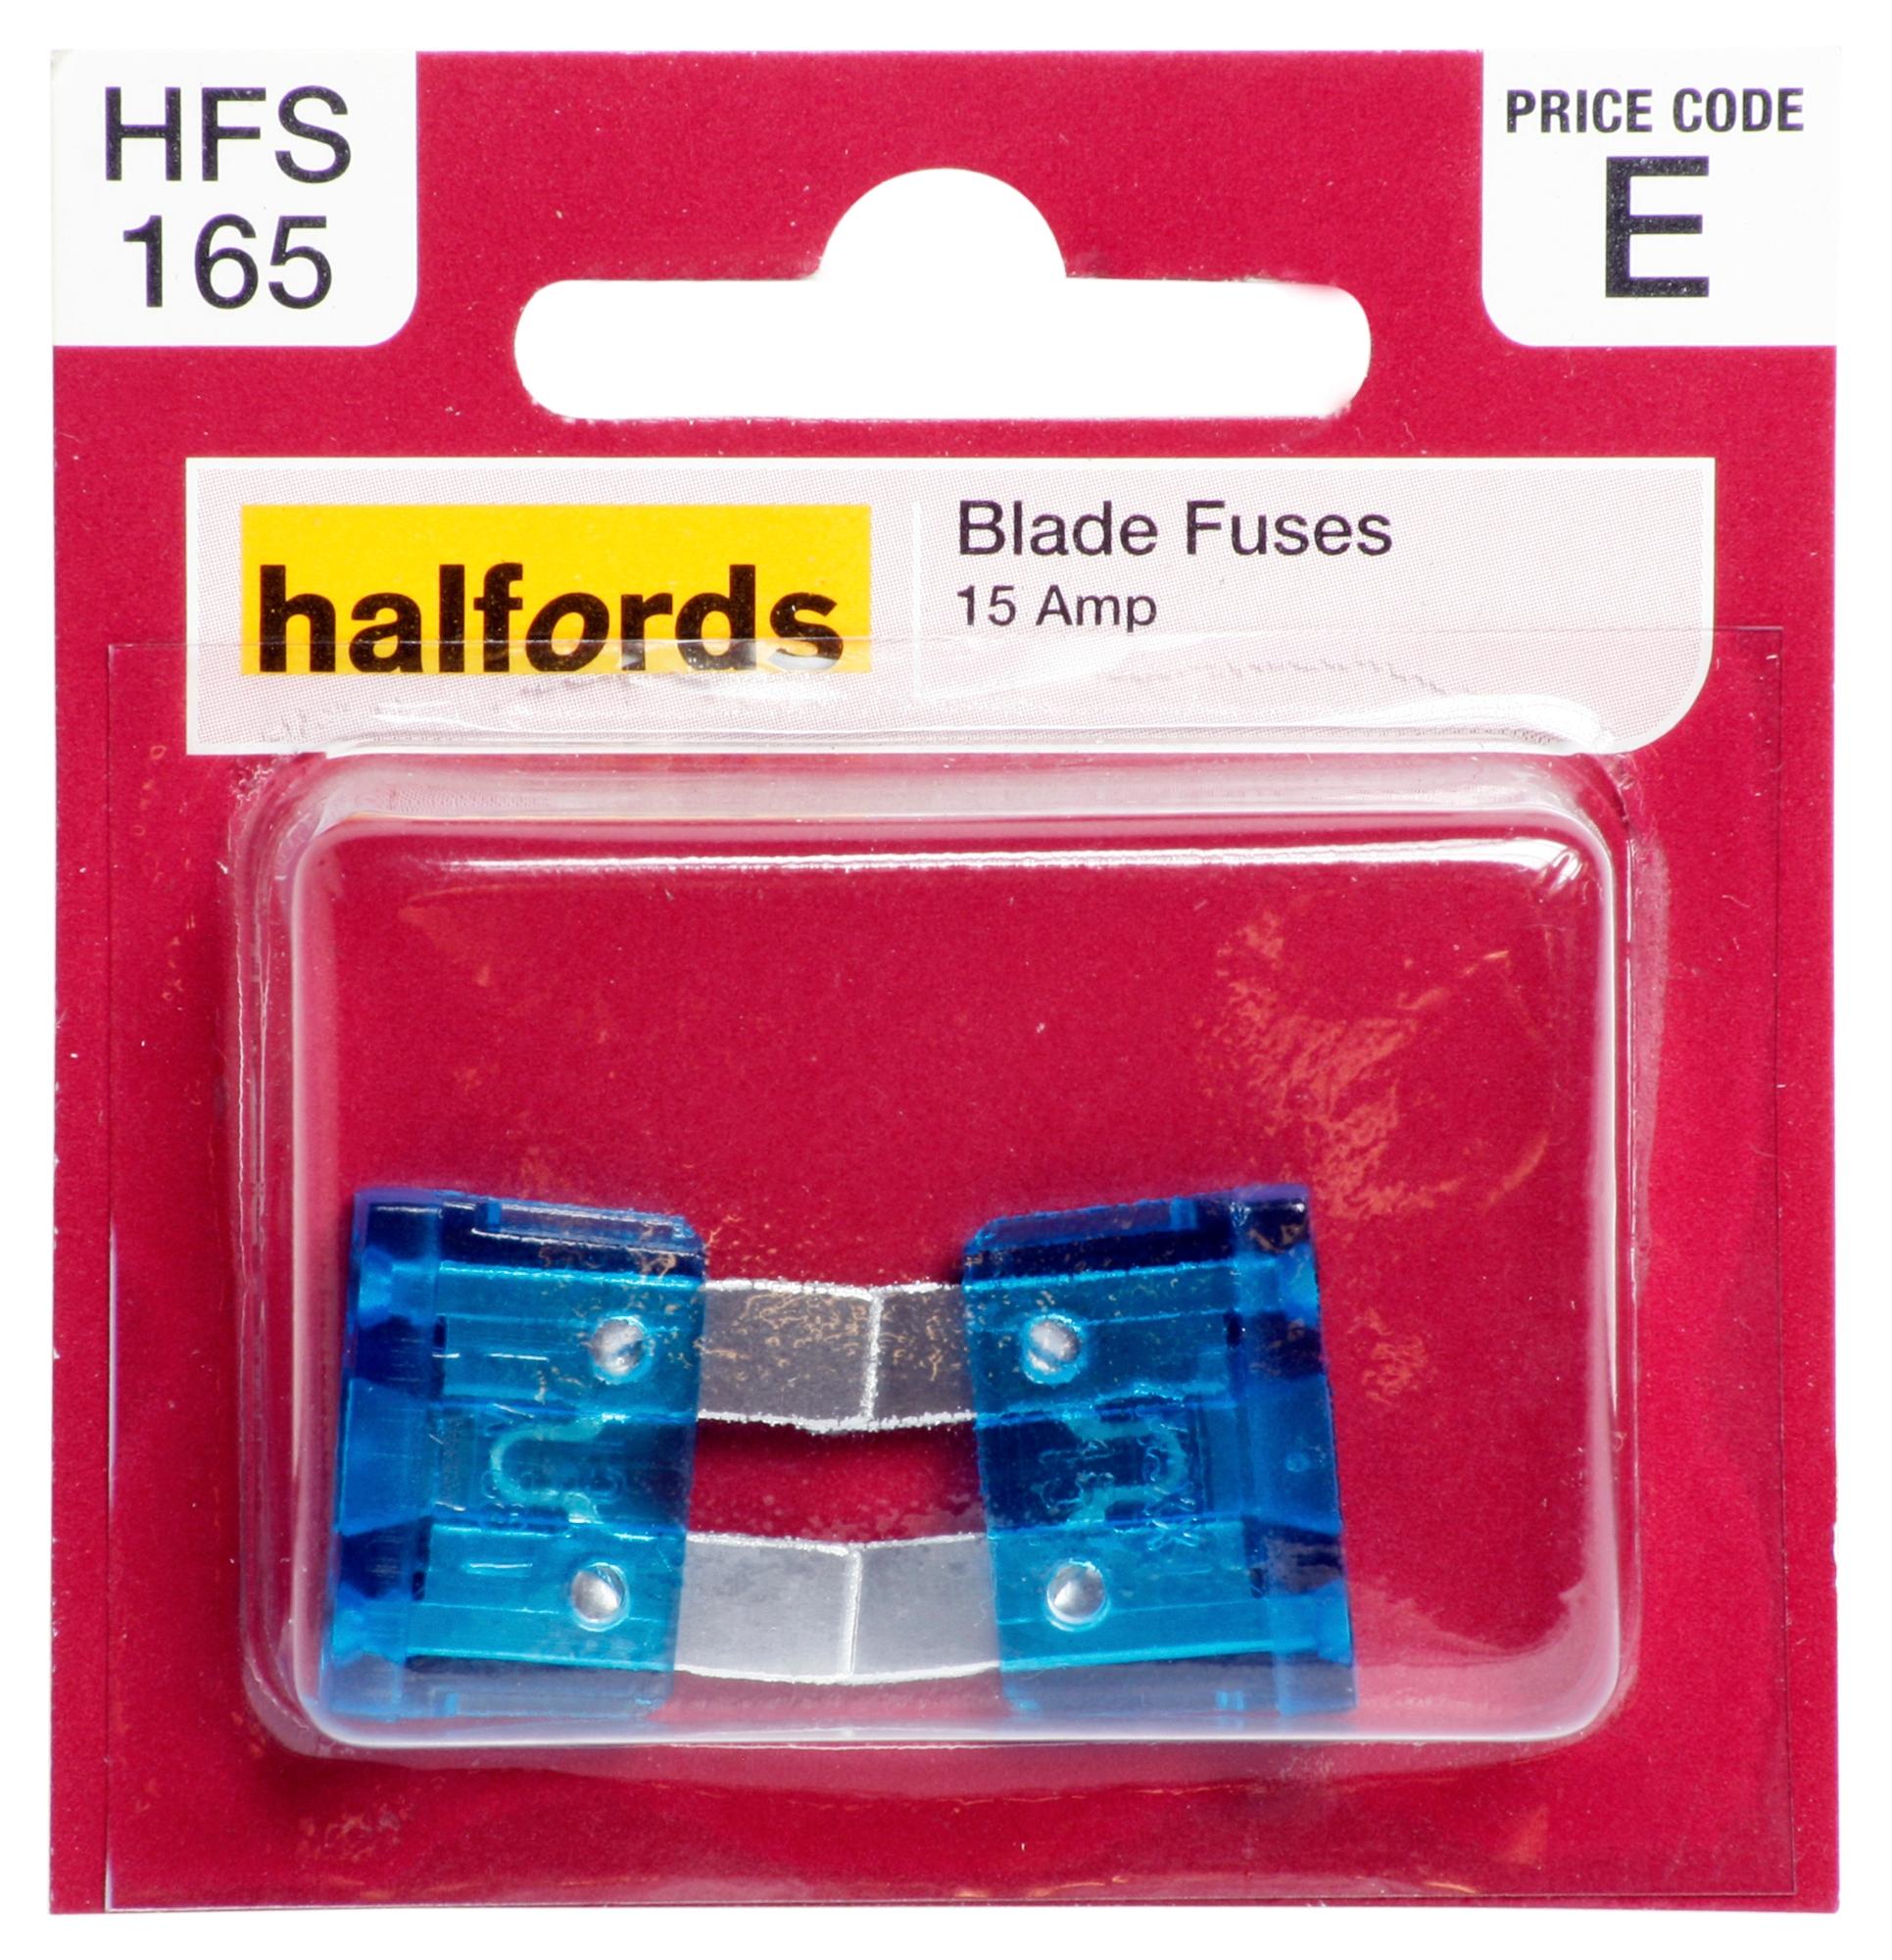 Halfords Blade Fuses 15 Amp (Hfs165)